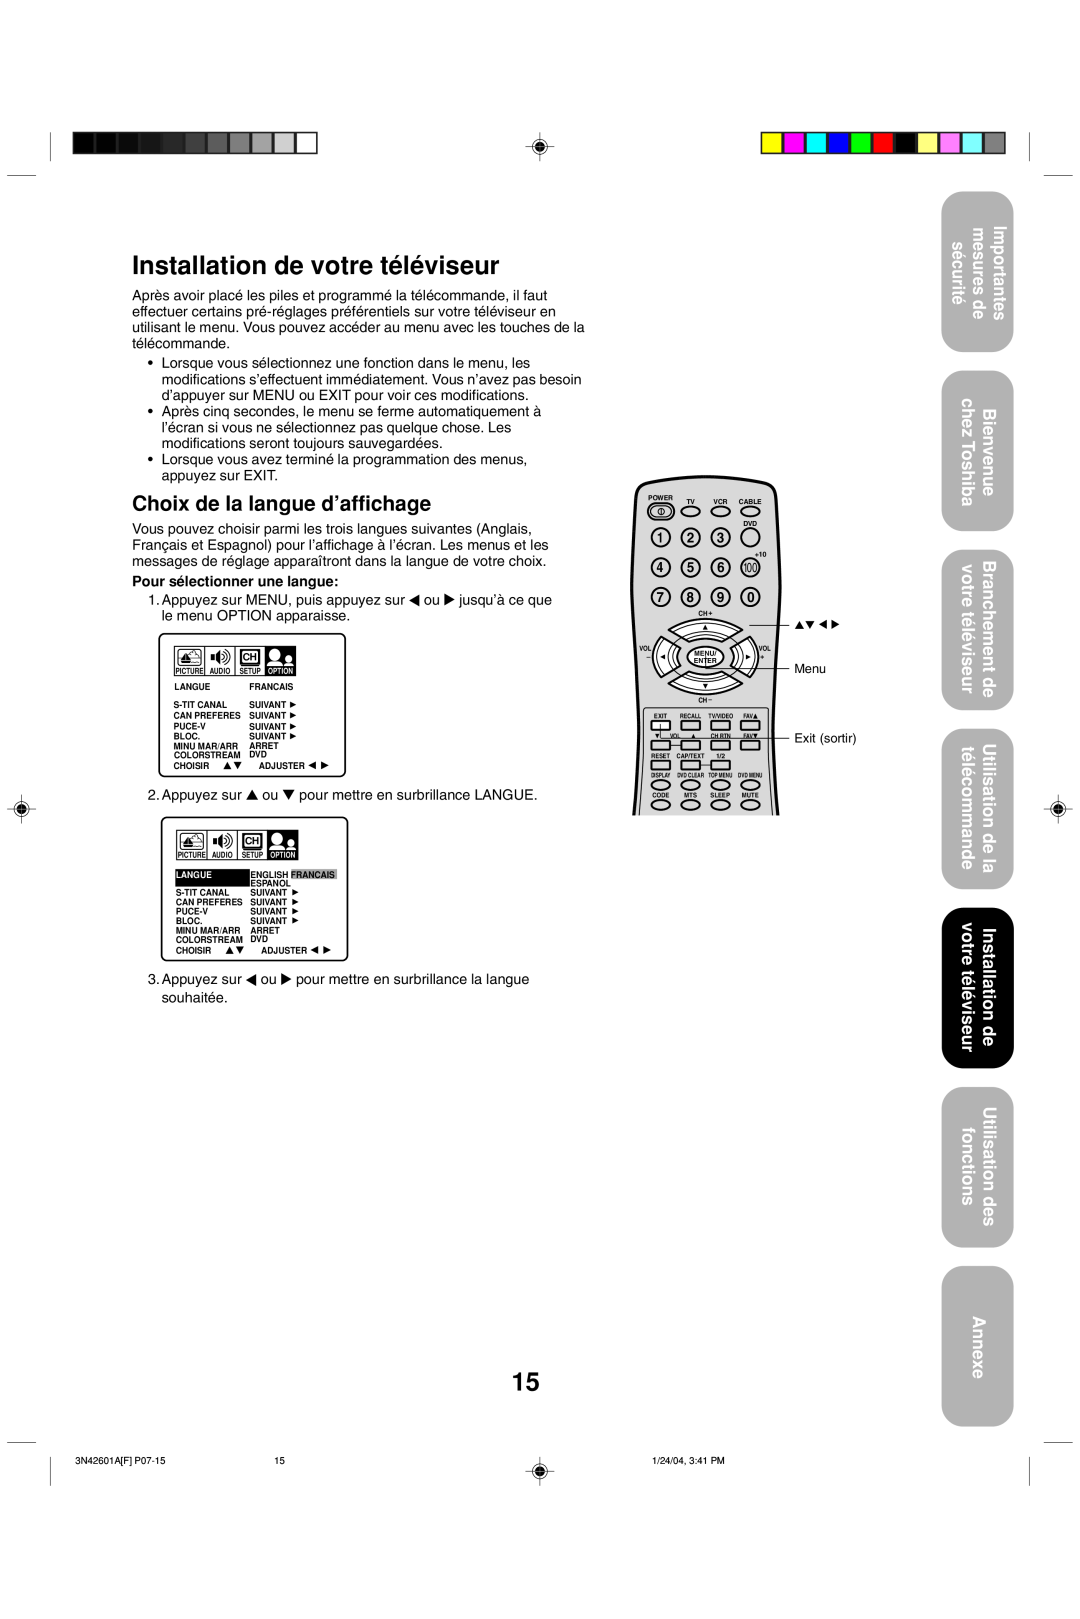 Toshiba 27A44 Installation de votre téléviseur, Choix de la langue d’affichage, Annexe, Pour sélectionner une langue 